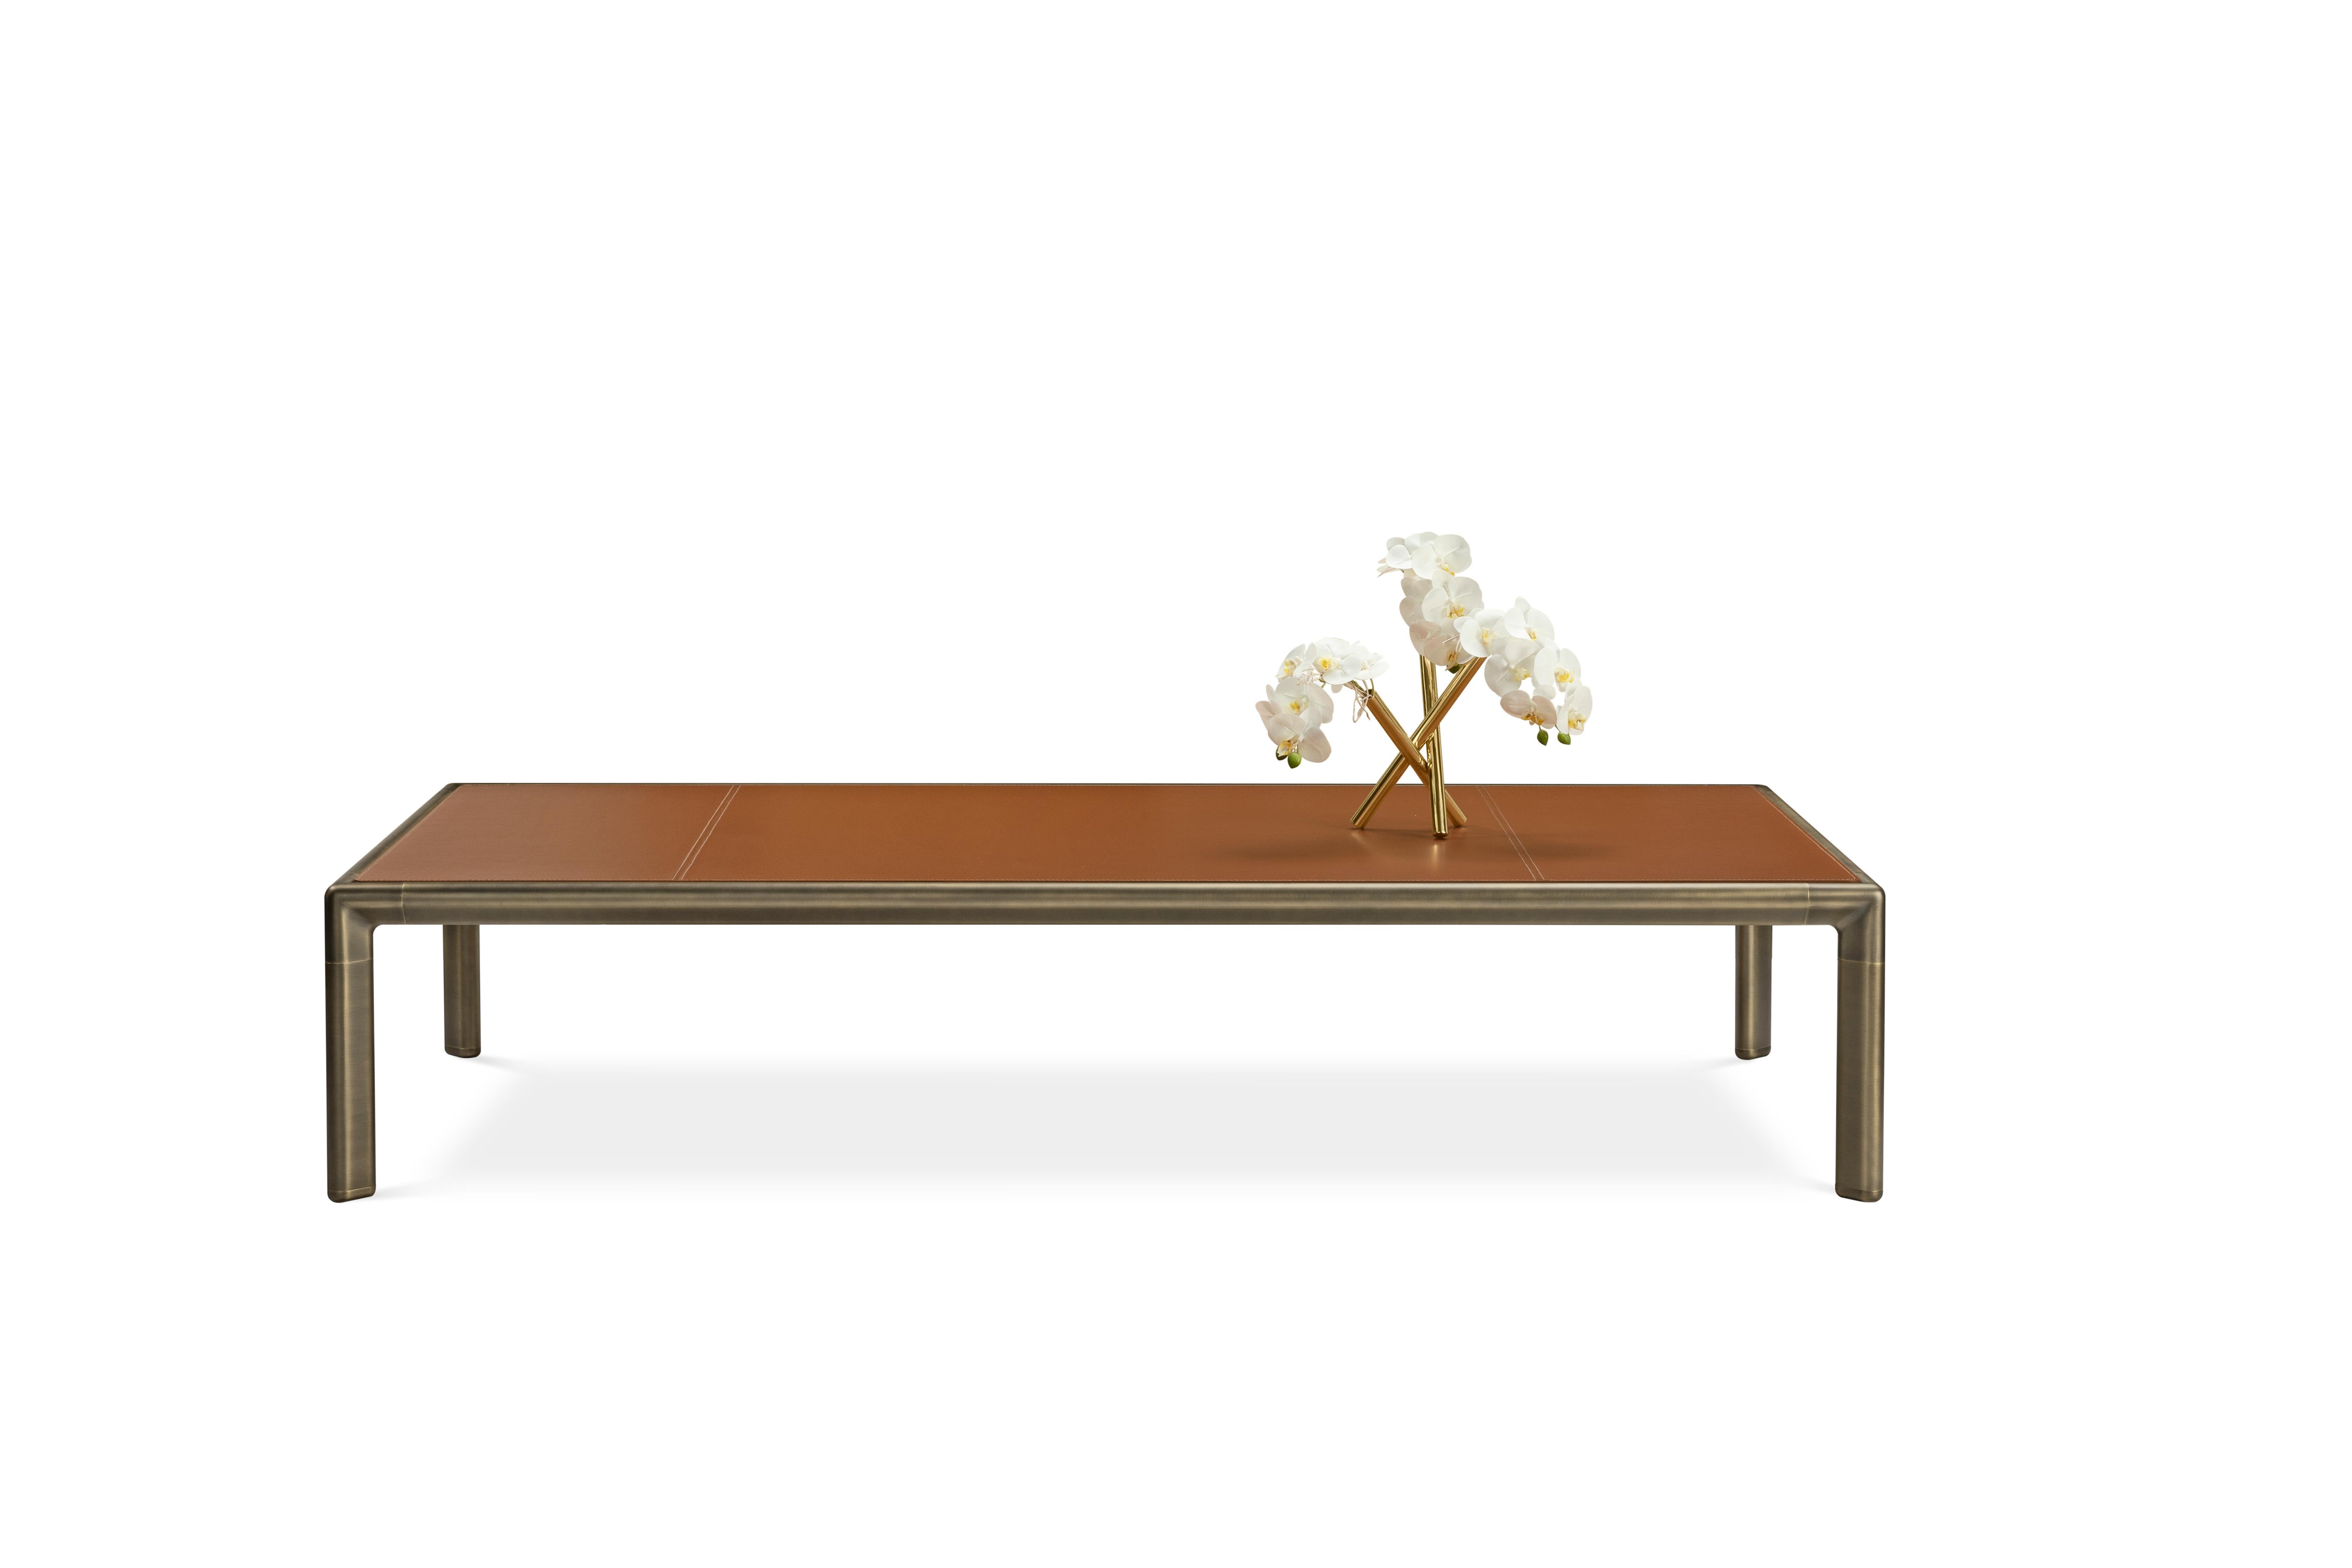 Stefano Giovannoni conçoit Frame pour GHIDINI1961, une nouvelle collection composée de canapés, fauteuils, tables à manger et tables basses, bibliothèques et armoires. Tout part d'un élément simple : 